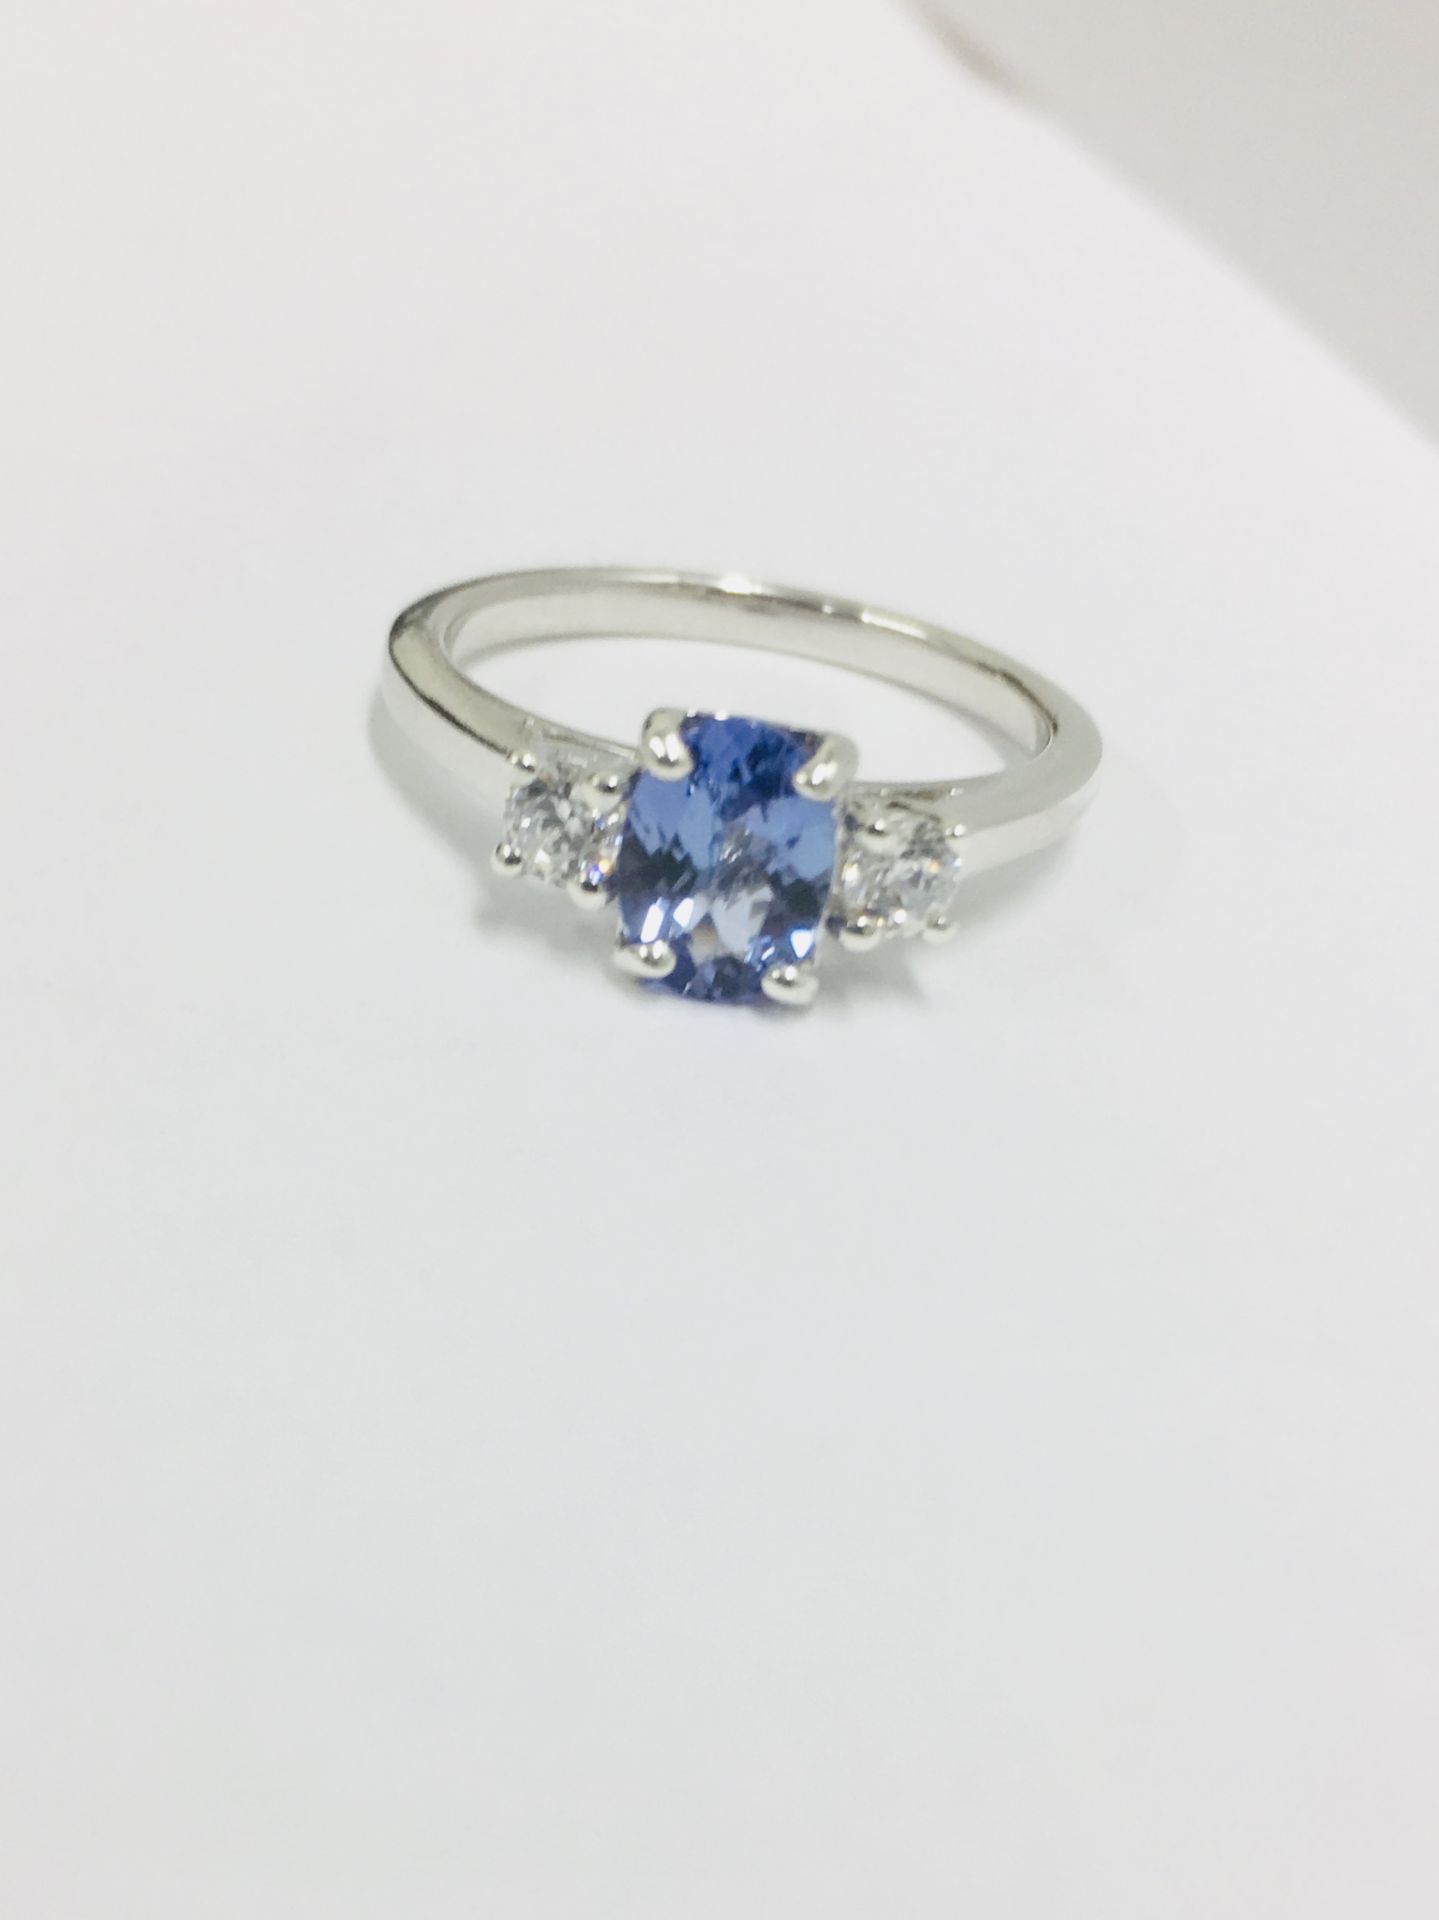 Platinum Sapphire Diamond three stone ring,7mmx5mm sapphire 1ct ,0.20ct diamonds (2x.10ct) h